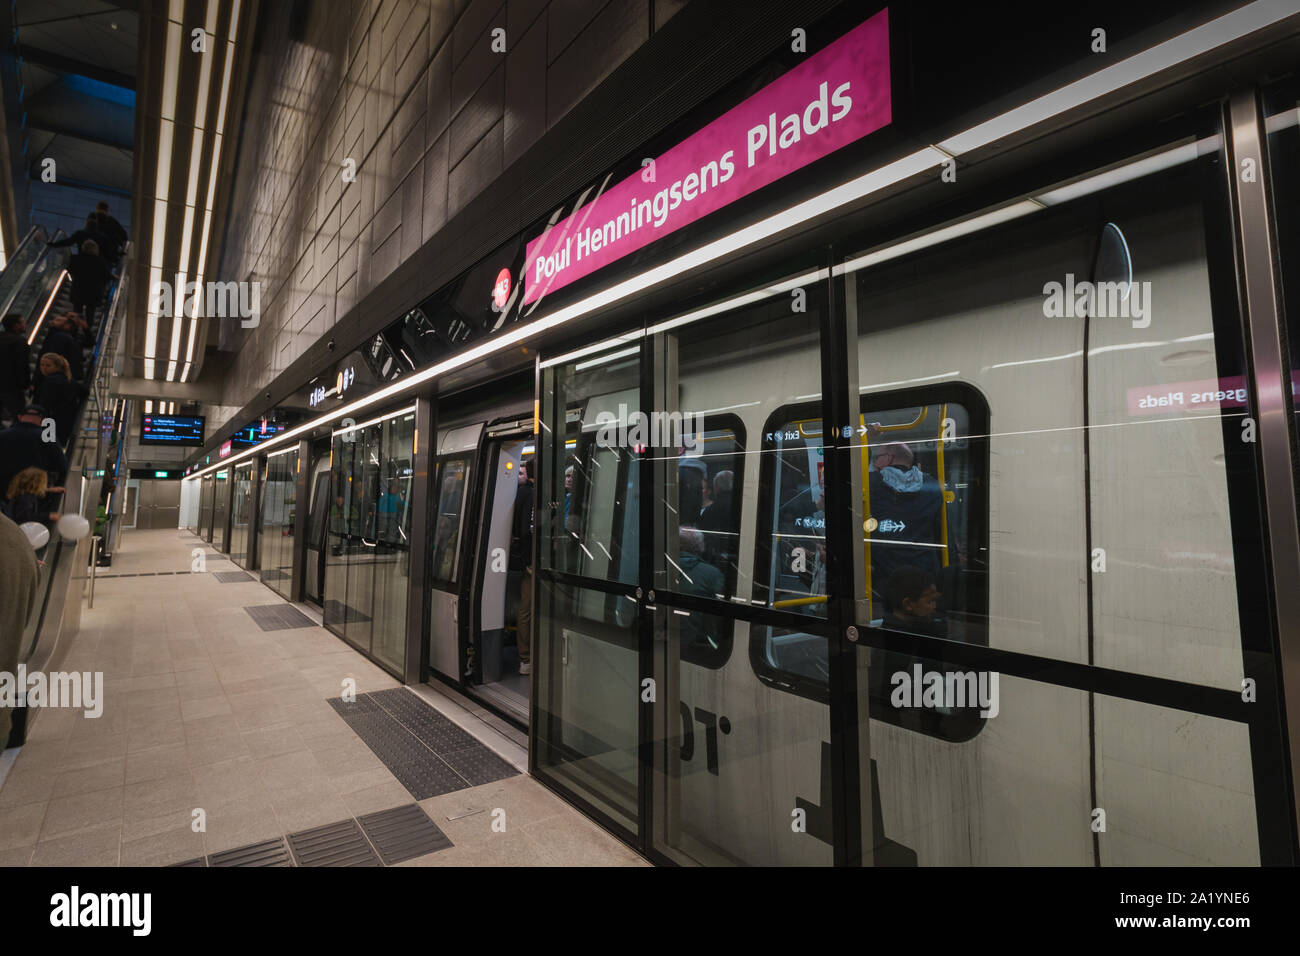 Copenaghen, Zelanda Danimarca - 29 9 2019: persone che stanno cercando nuove M3 Cityringen metro linea. Poul Henningsens Plads stazione. Foto Stock